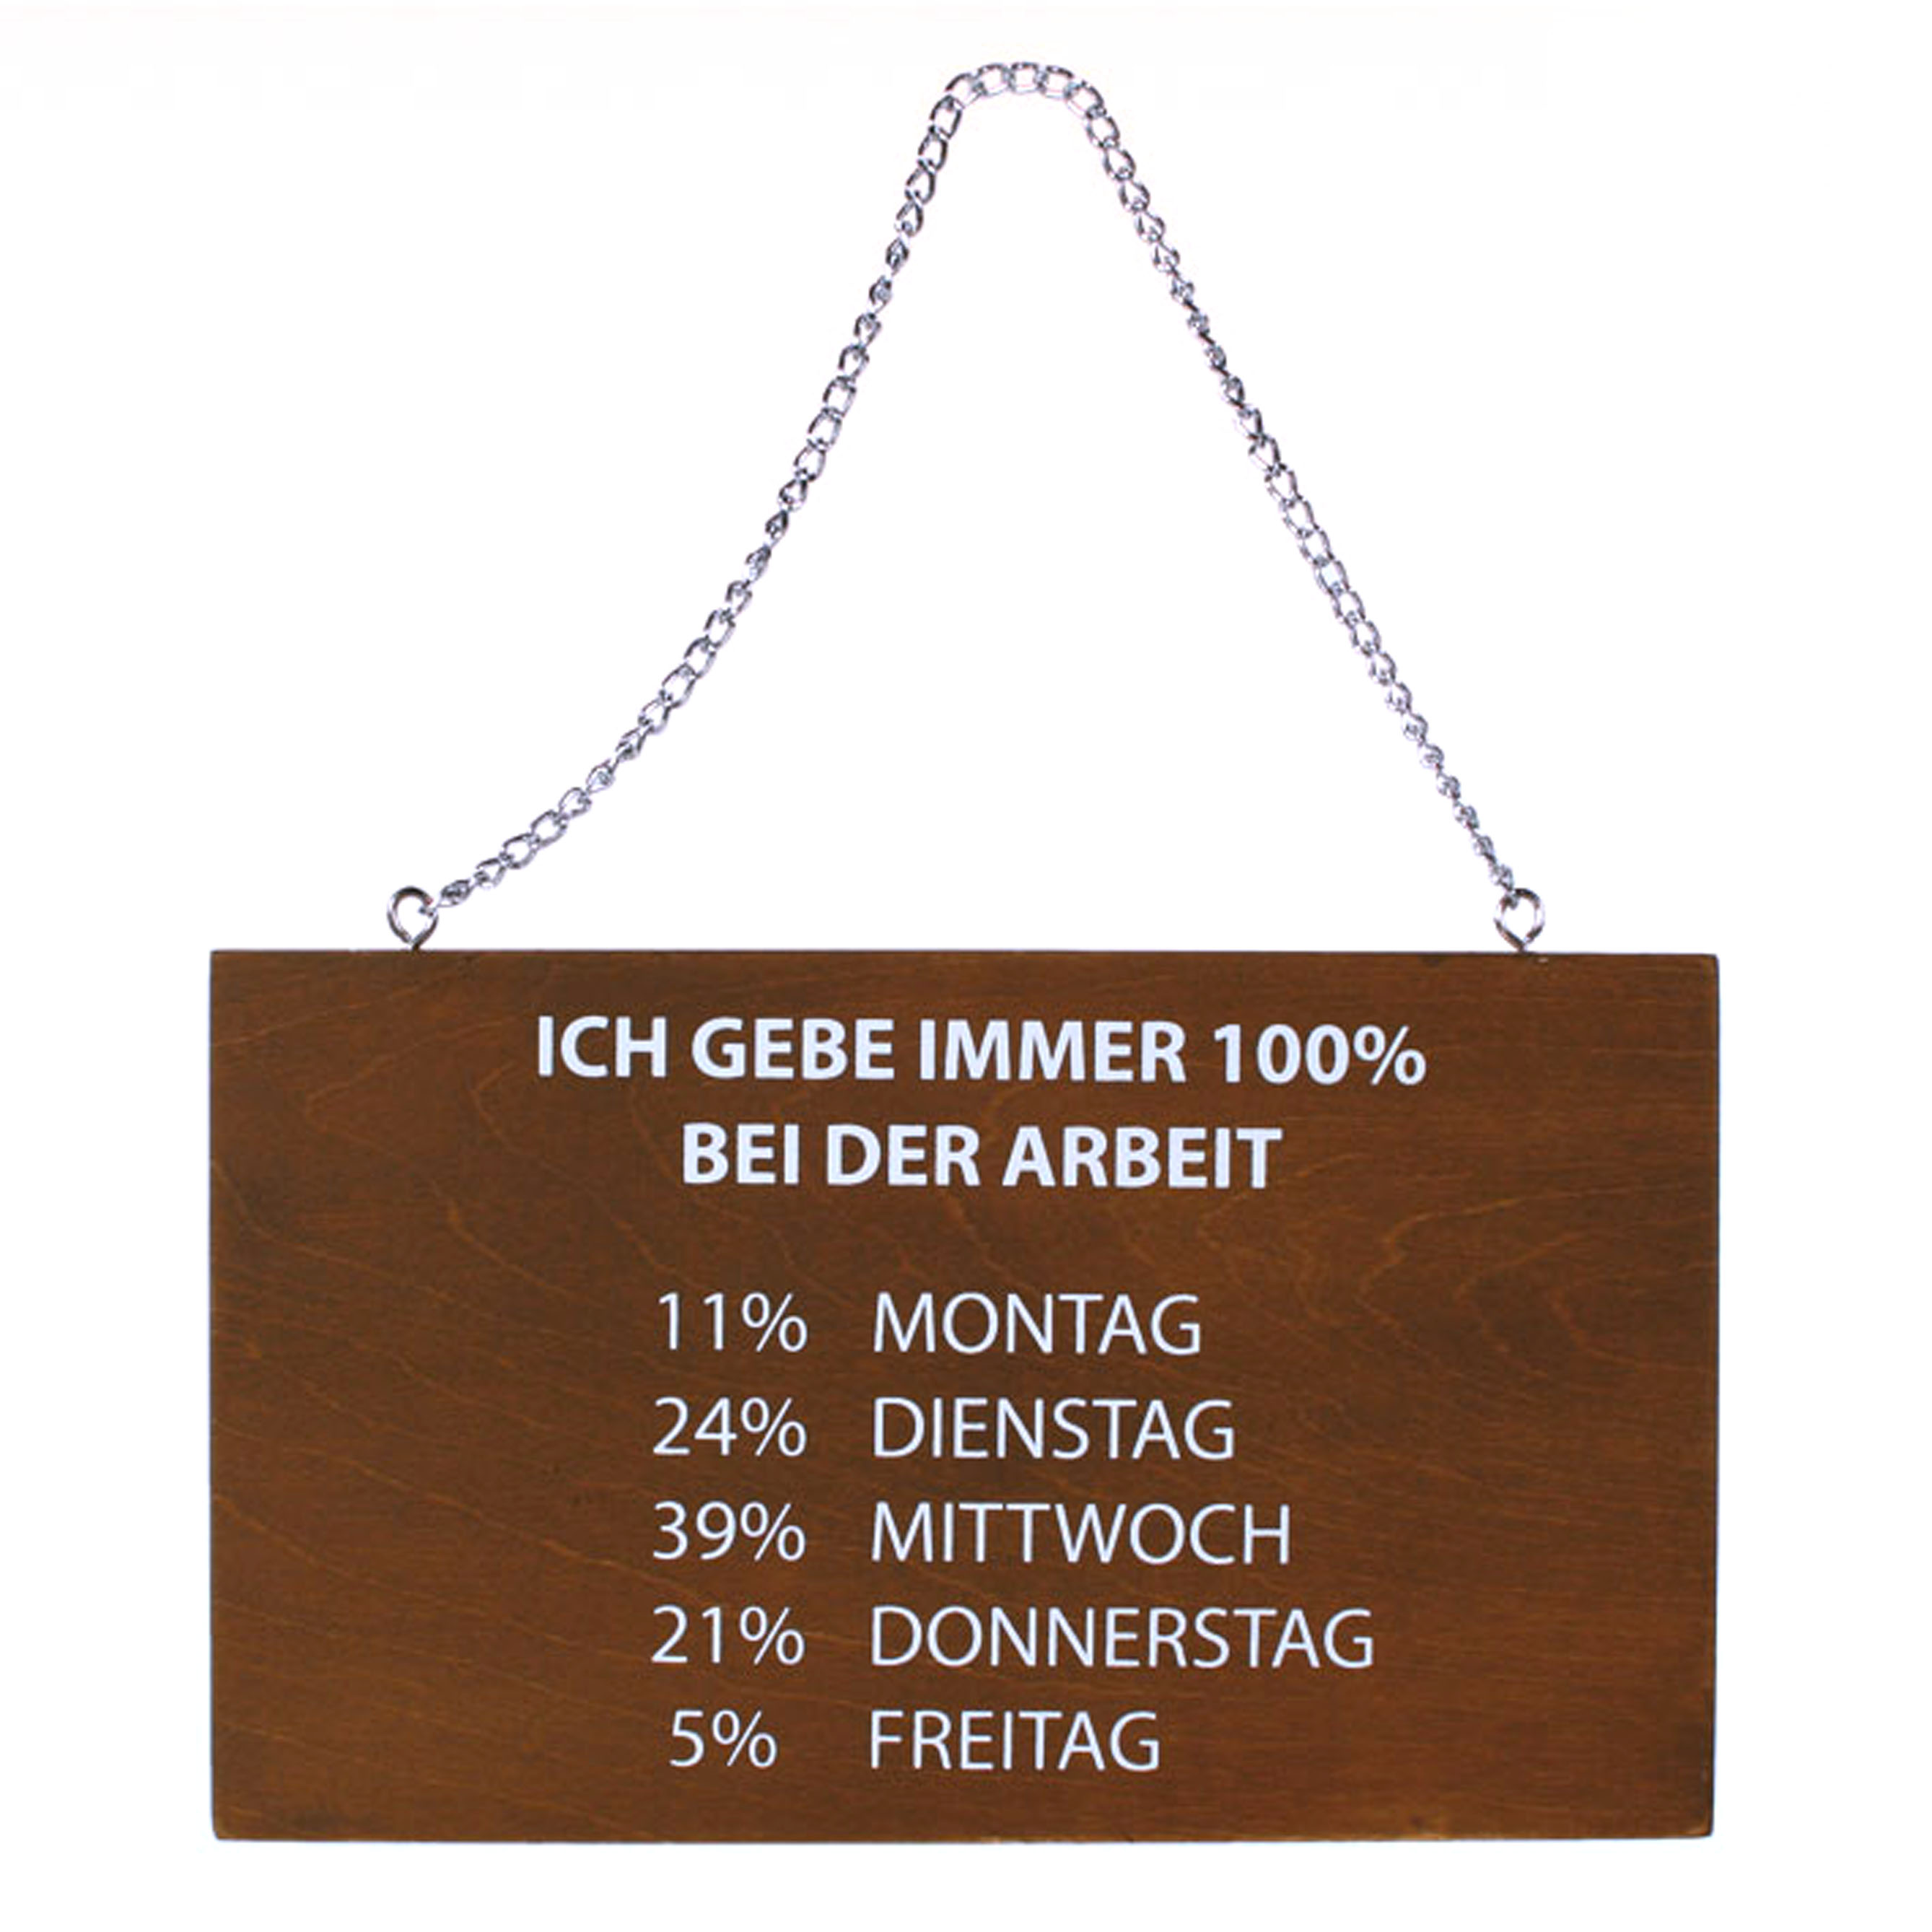 17/1121 Holz-Schild mit Spruch "Ich gebe immer 100% ...", zum Aufhängen, Out of the blue, braun, weiß